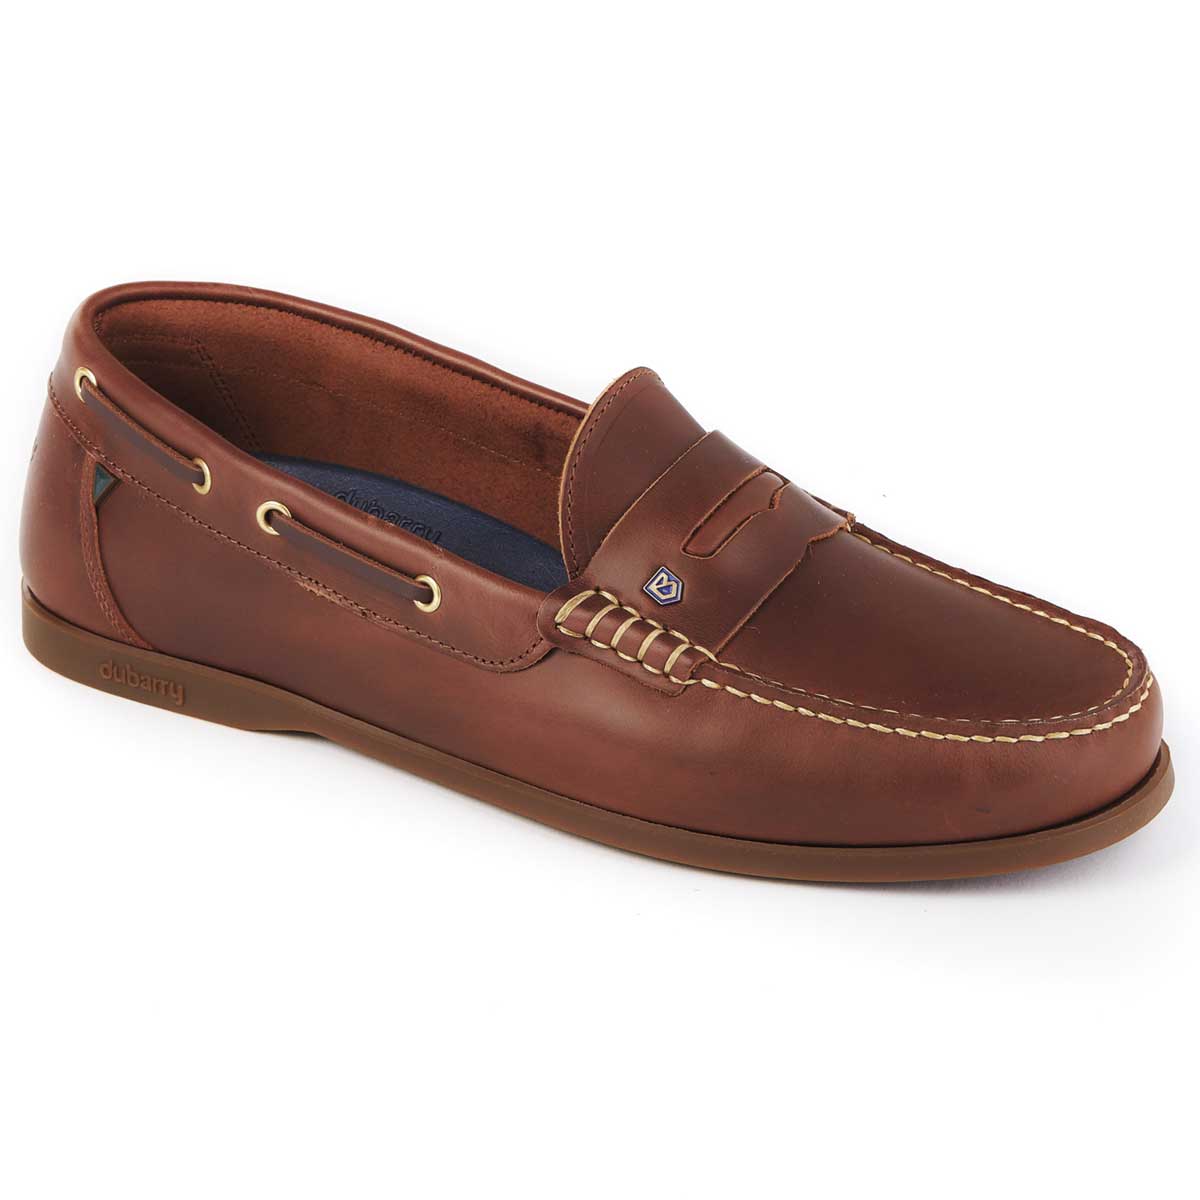 40% OFF DUBARRY Men's Spinnaker Loafer Deck Shoes - Brown - Size: UK 7 (EU 41)